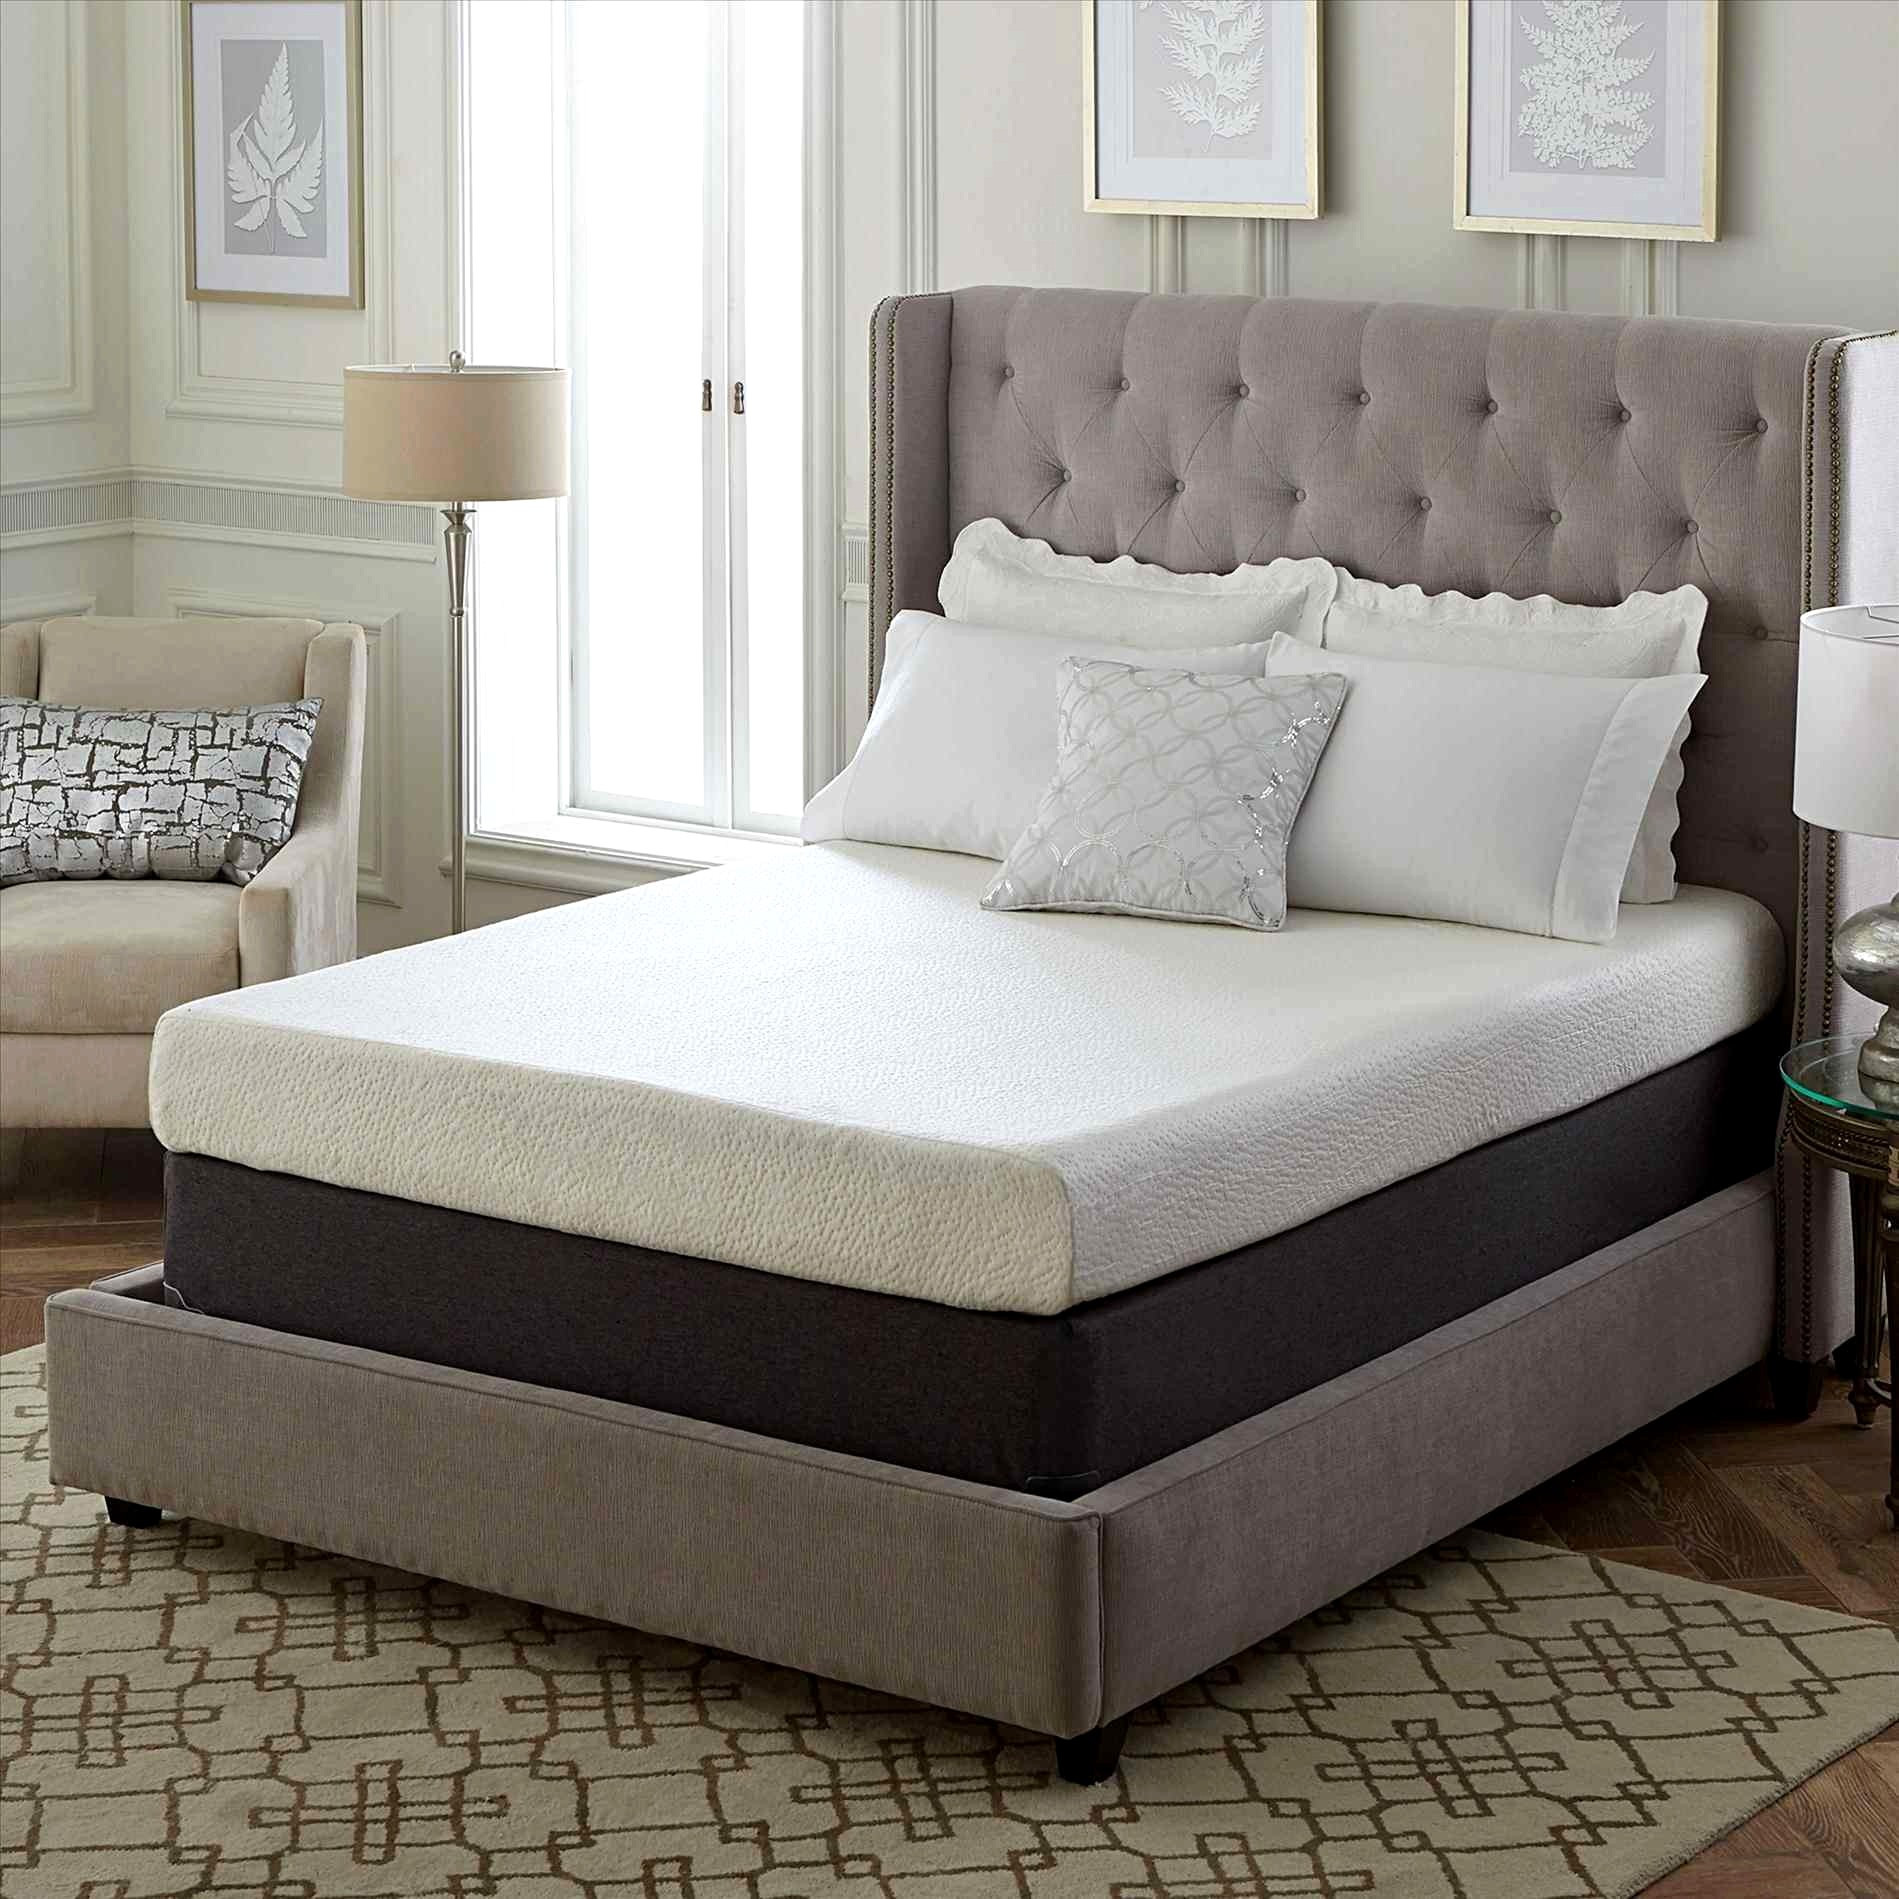 Best ideas about Memory Foam Sleeper Sofa Costco
. Save or Pin Memory Foam Sleeper Sofa Costco Now.